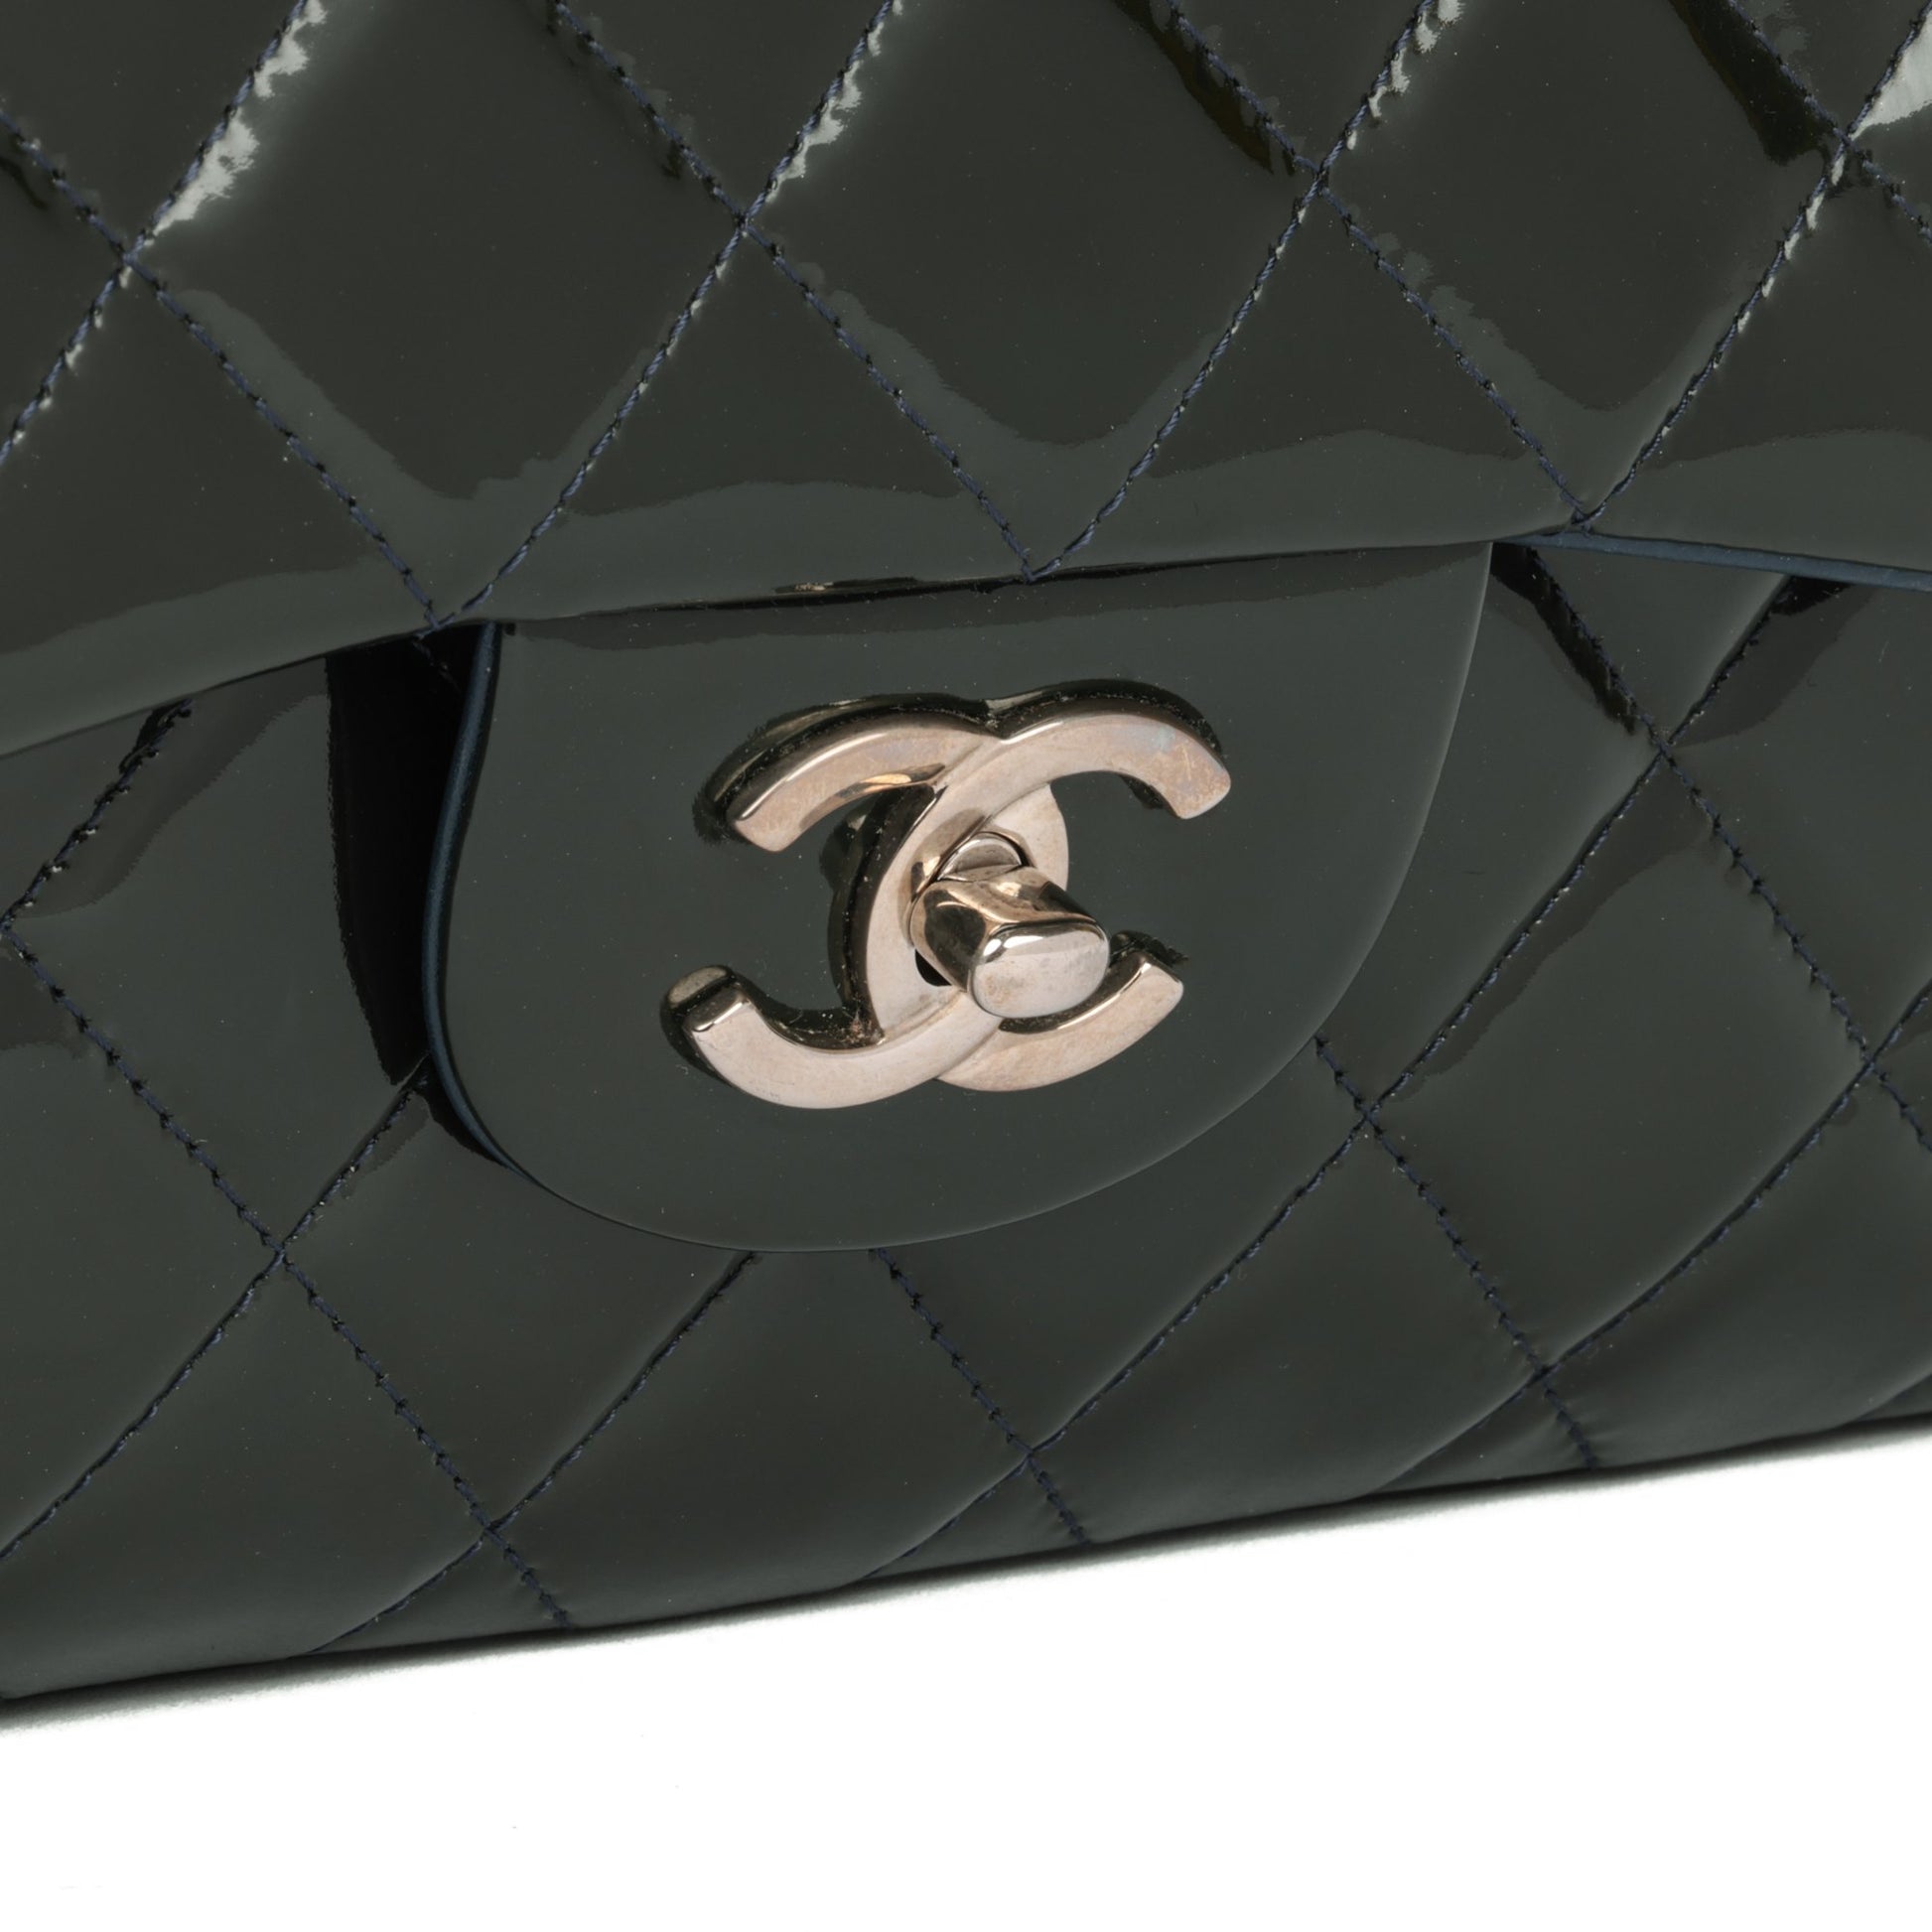 Chanel Nylon Flap Bag - 46 For Sale on 1stDibs  chanel nylon bag, chanel  travel line flap bag, nylon chanel bag